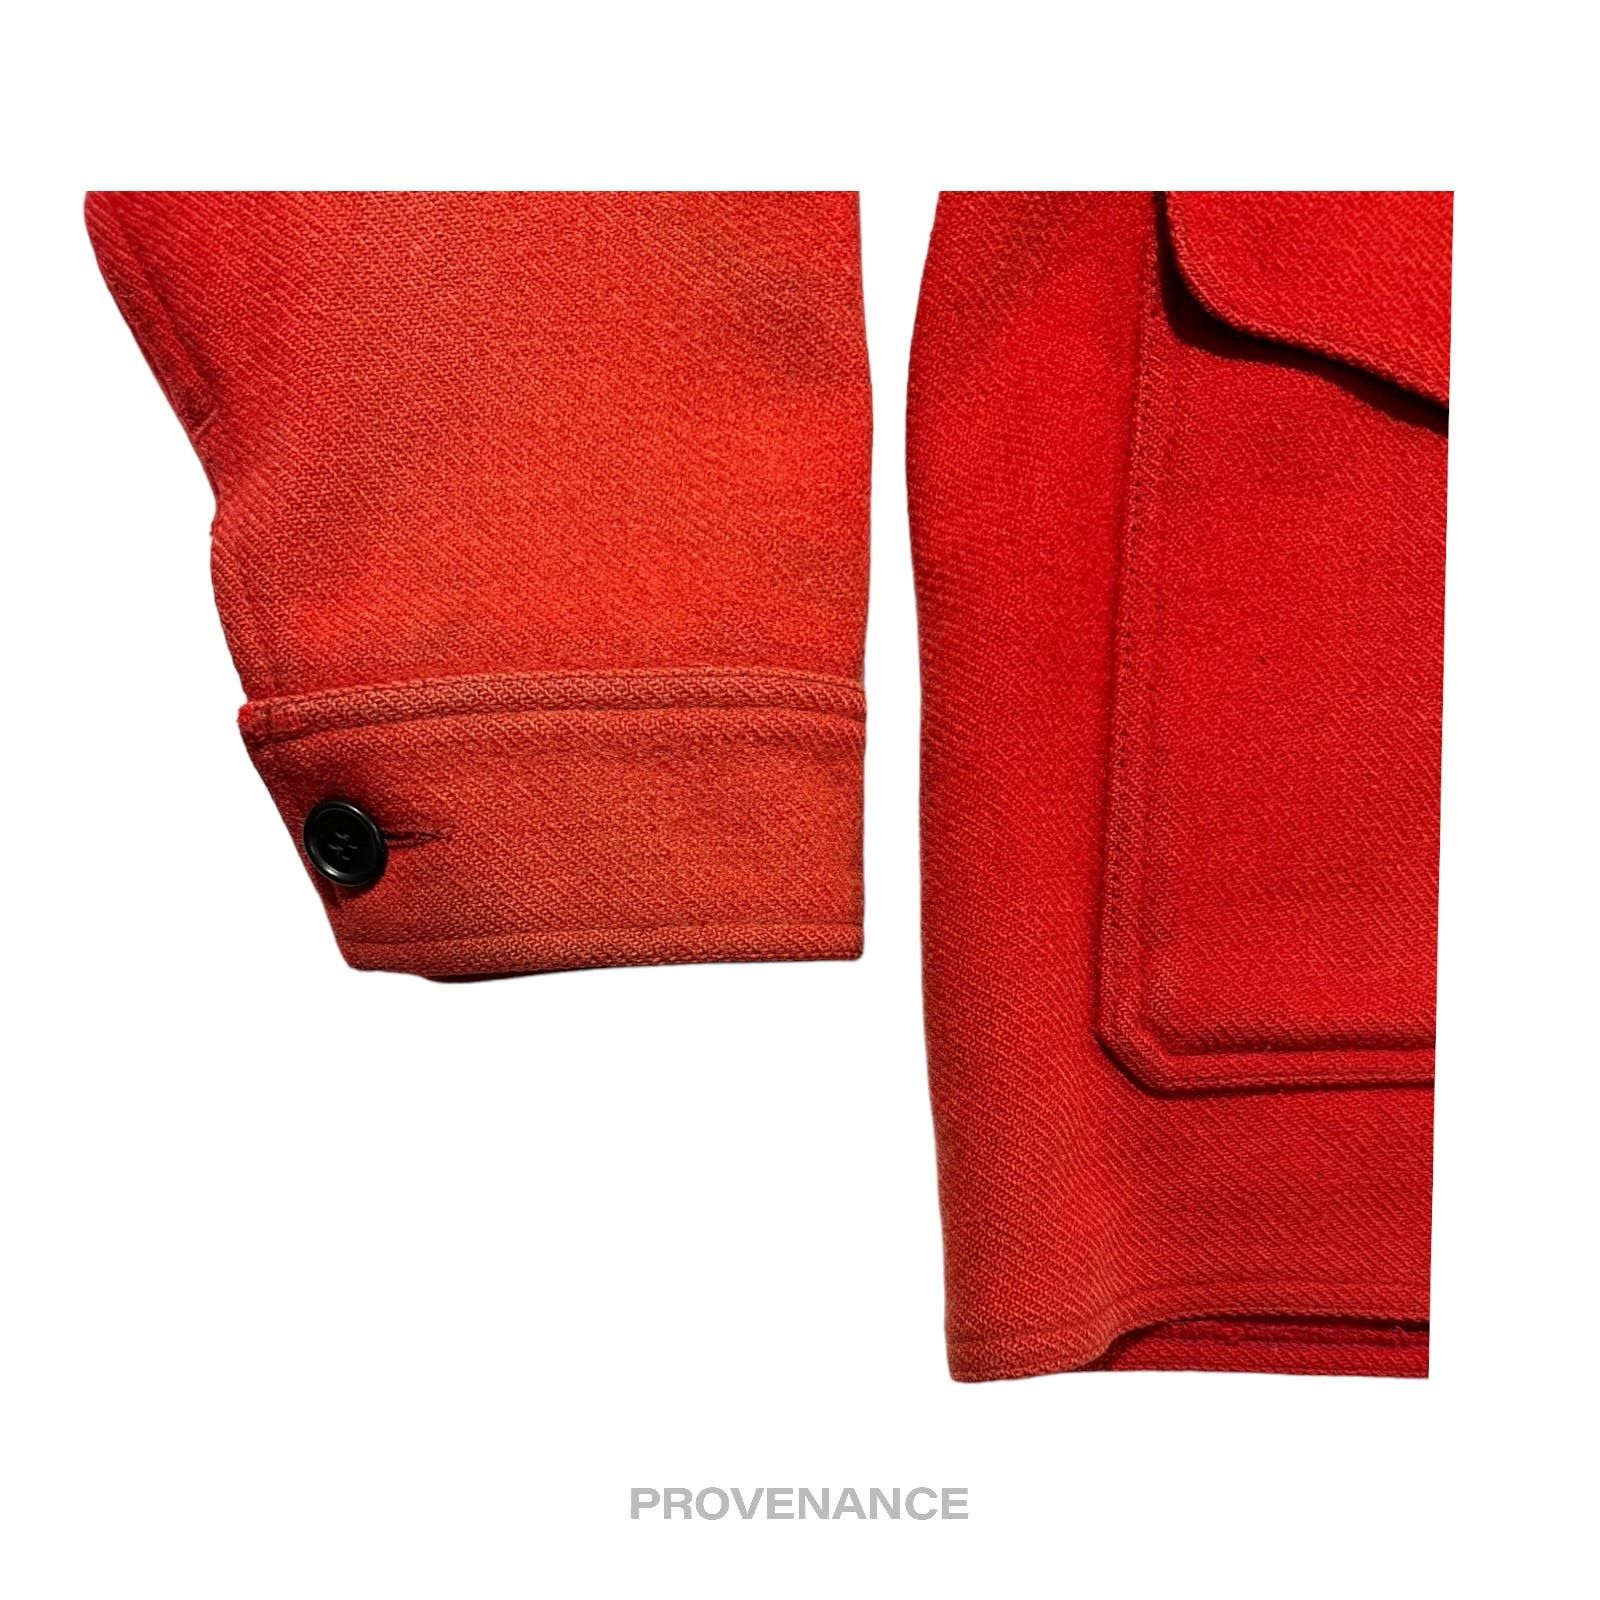 Filson 🔴 Filson Mackinaw Wool Cruiser Jacket - Scarlet Red 42 M Size US M / EU 48-50 / 2 - 5 Thumbnail